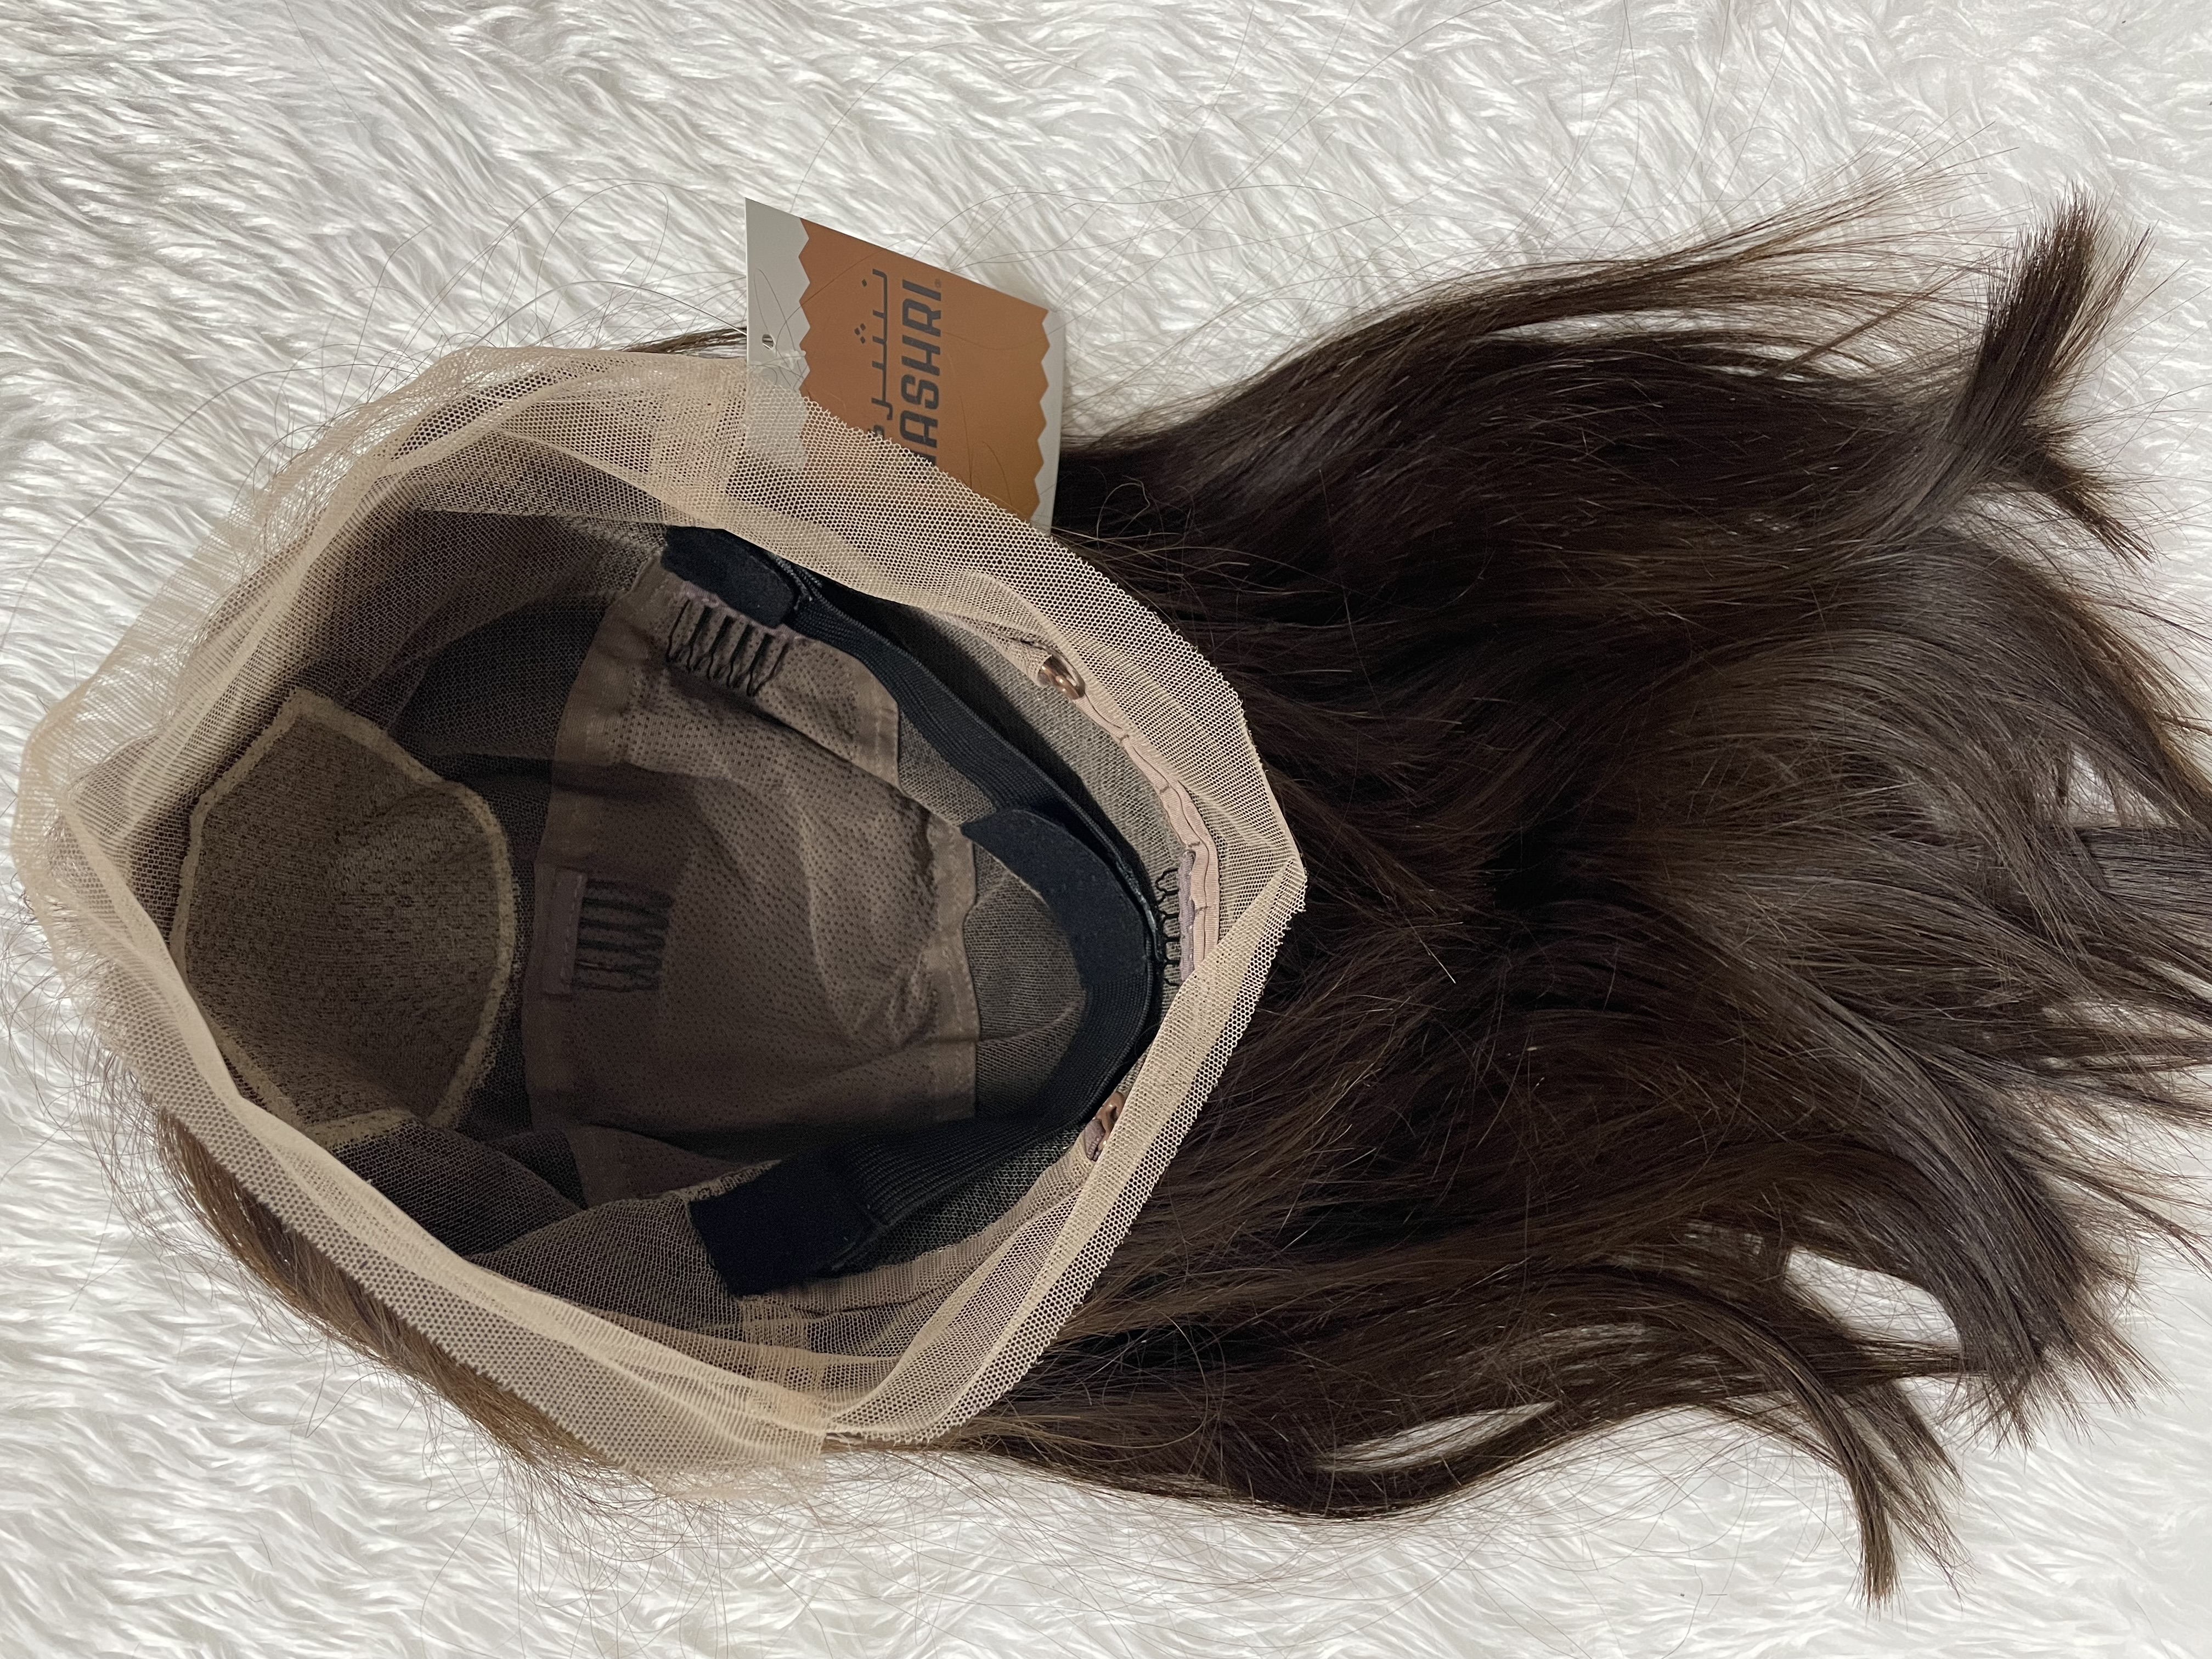 باروكة  ميسا 14 انش جذور دانتيل كاملة مع مقدمة حرير  100% شعر طبيعي برازيلي المصدر .